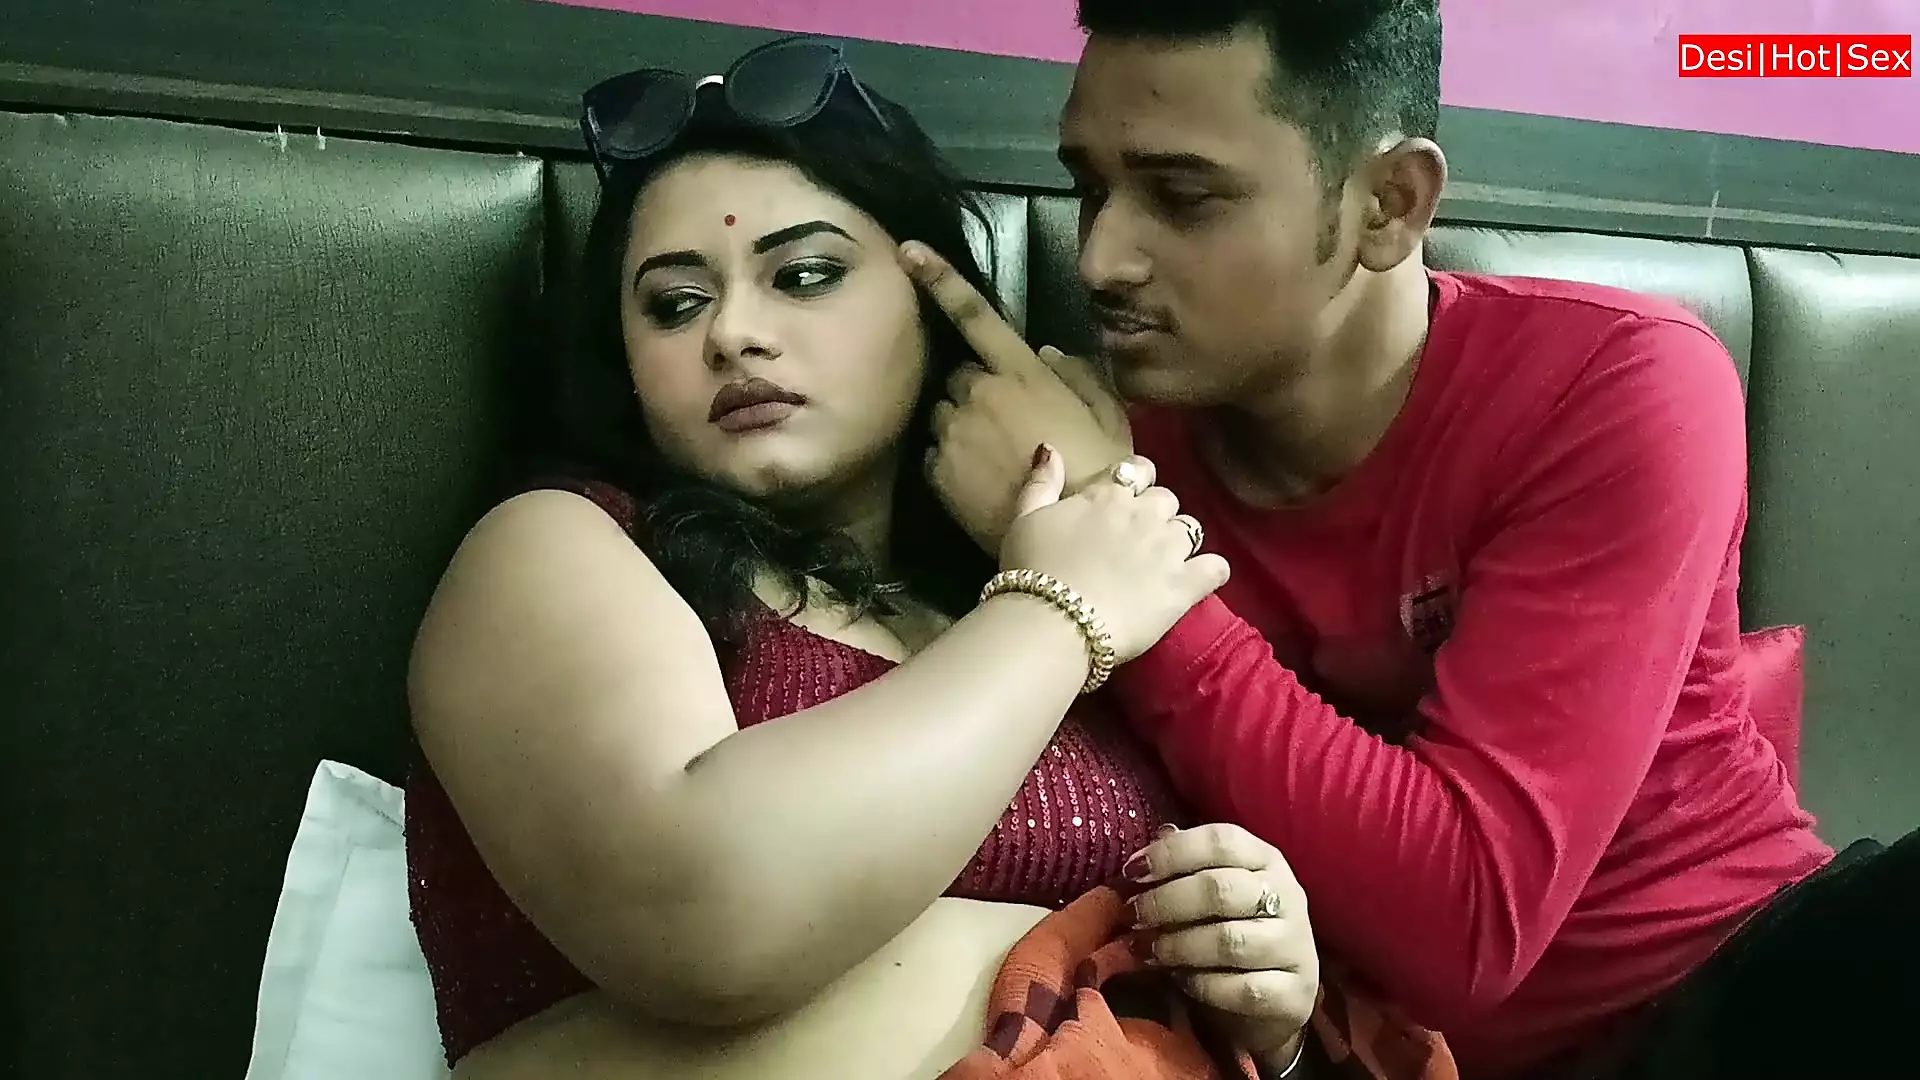 Desi Pure Hot Bhabhi Fucking with Neighbour Boy! Hindi Web